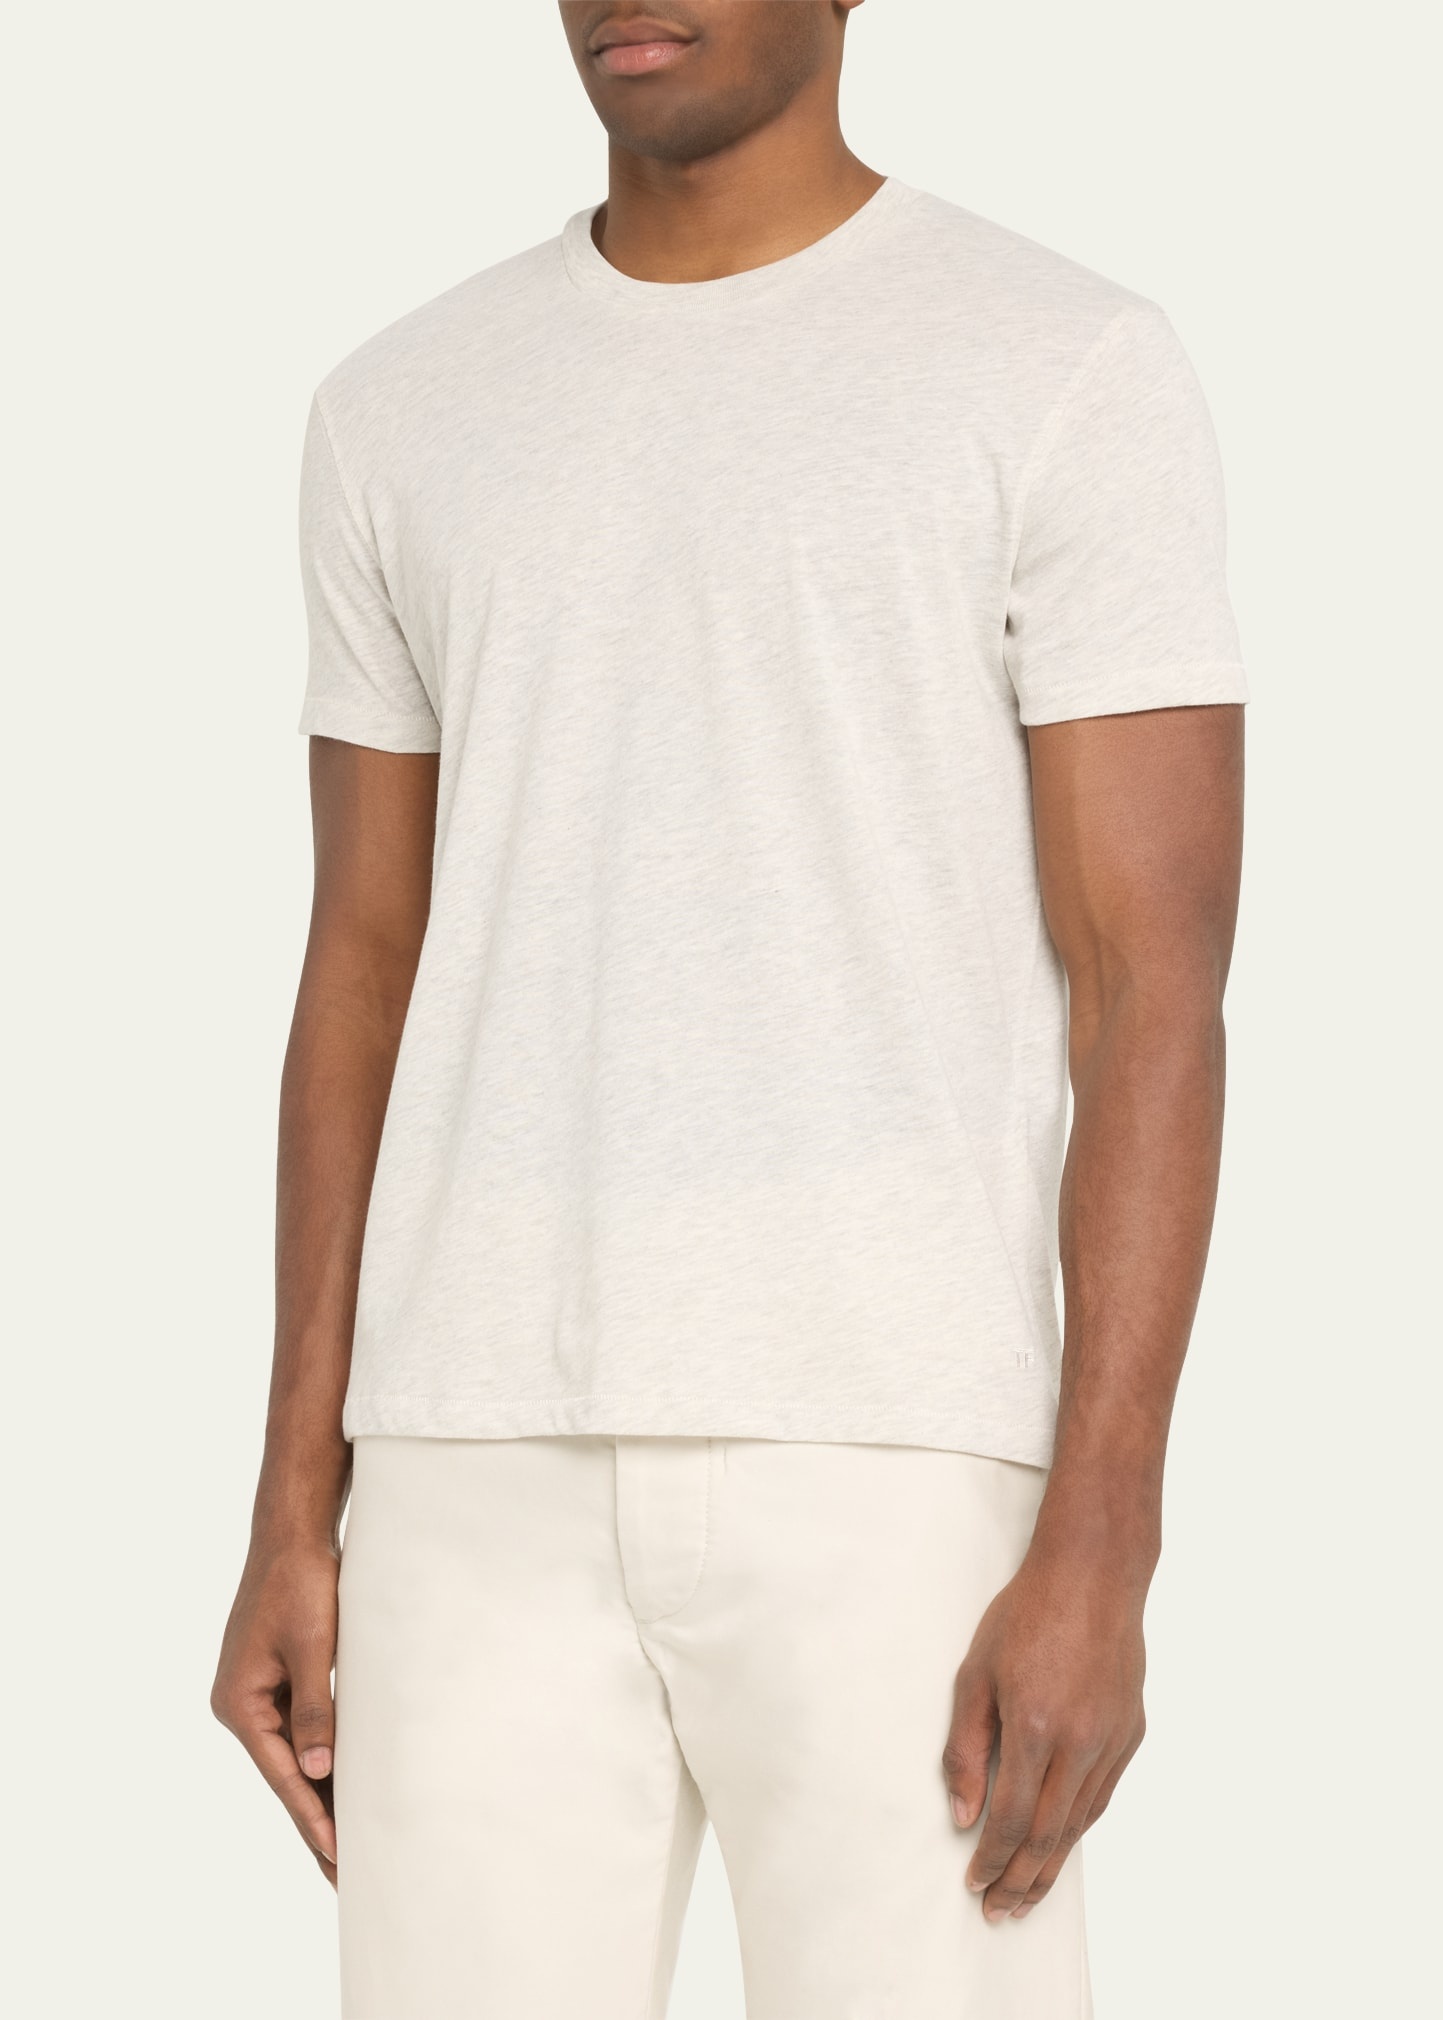 Men's Cotton Crewneck T-Shirt - 4